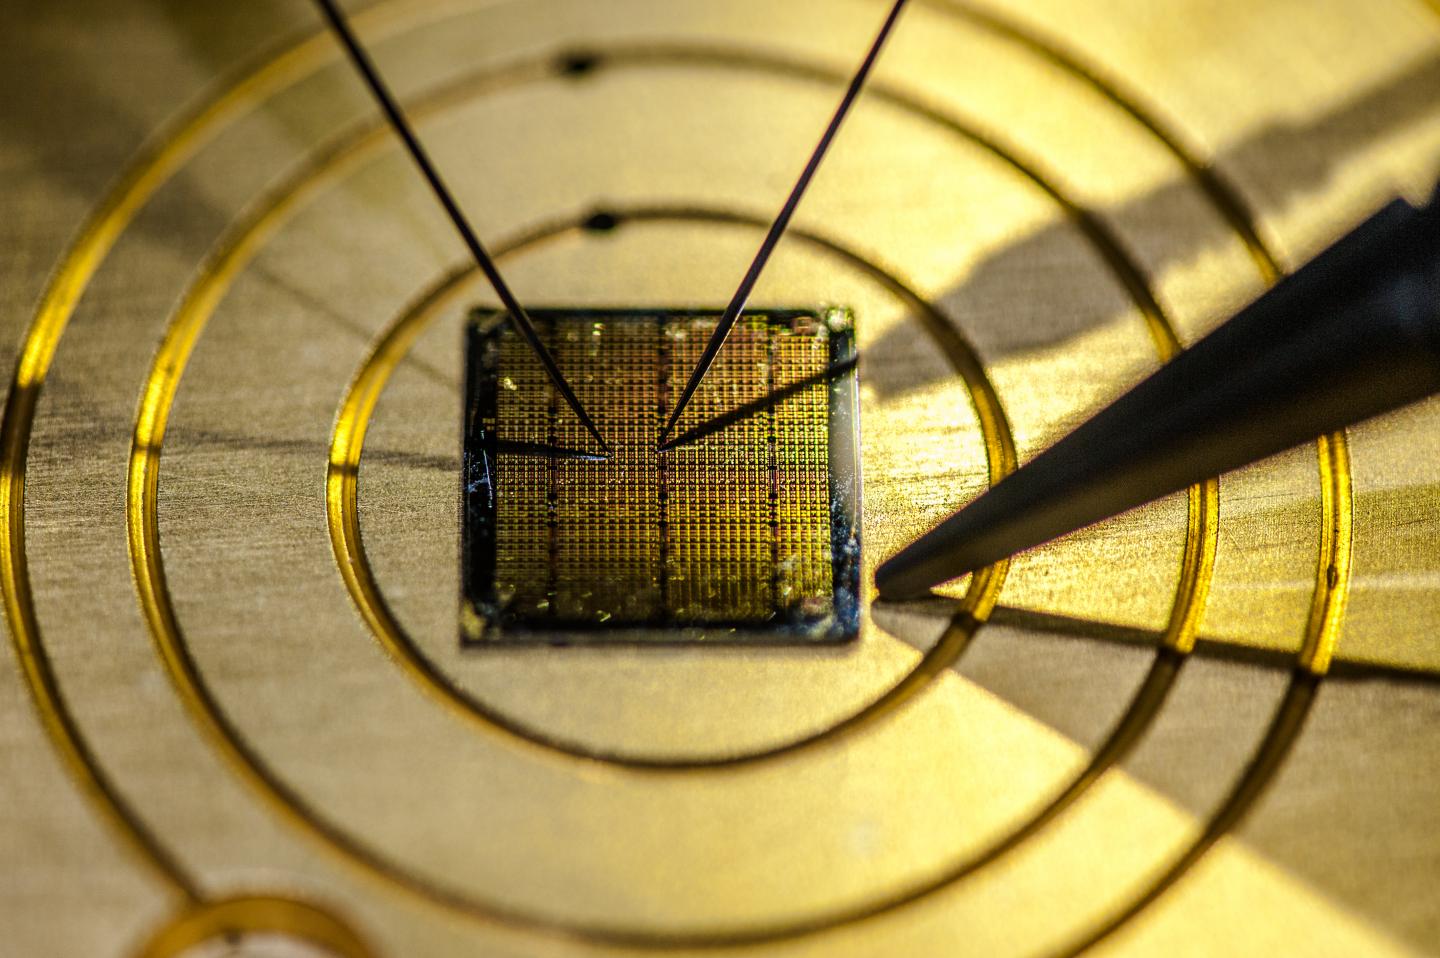 A Gold Microchip